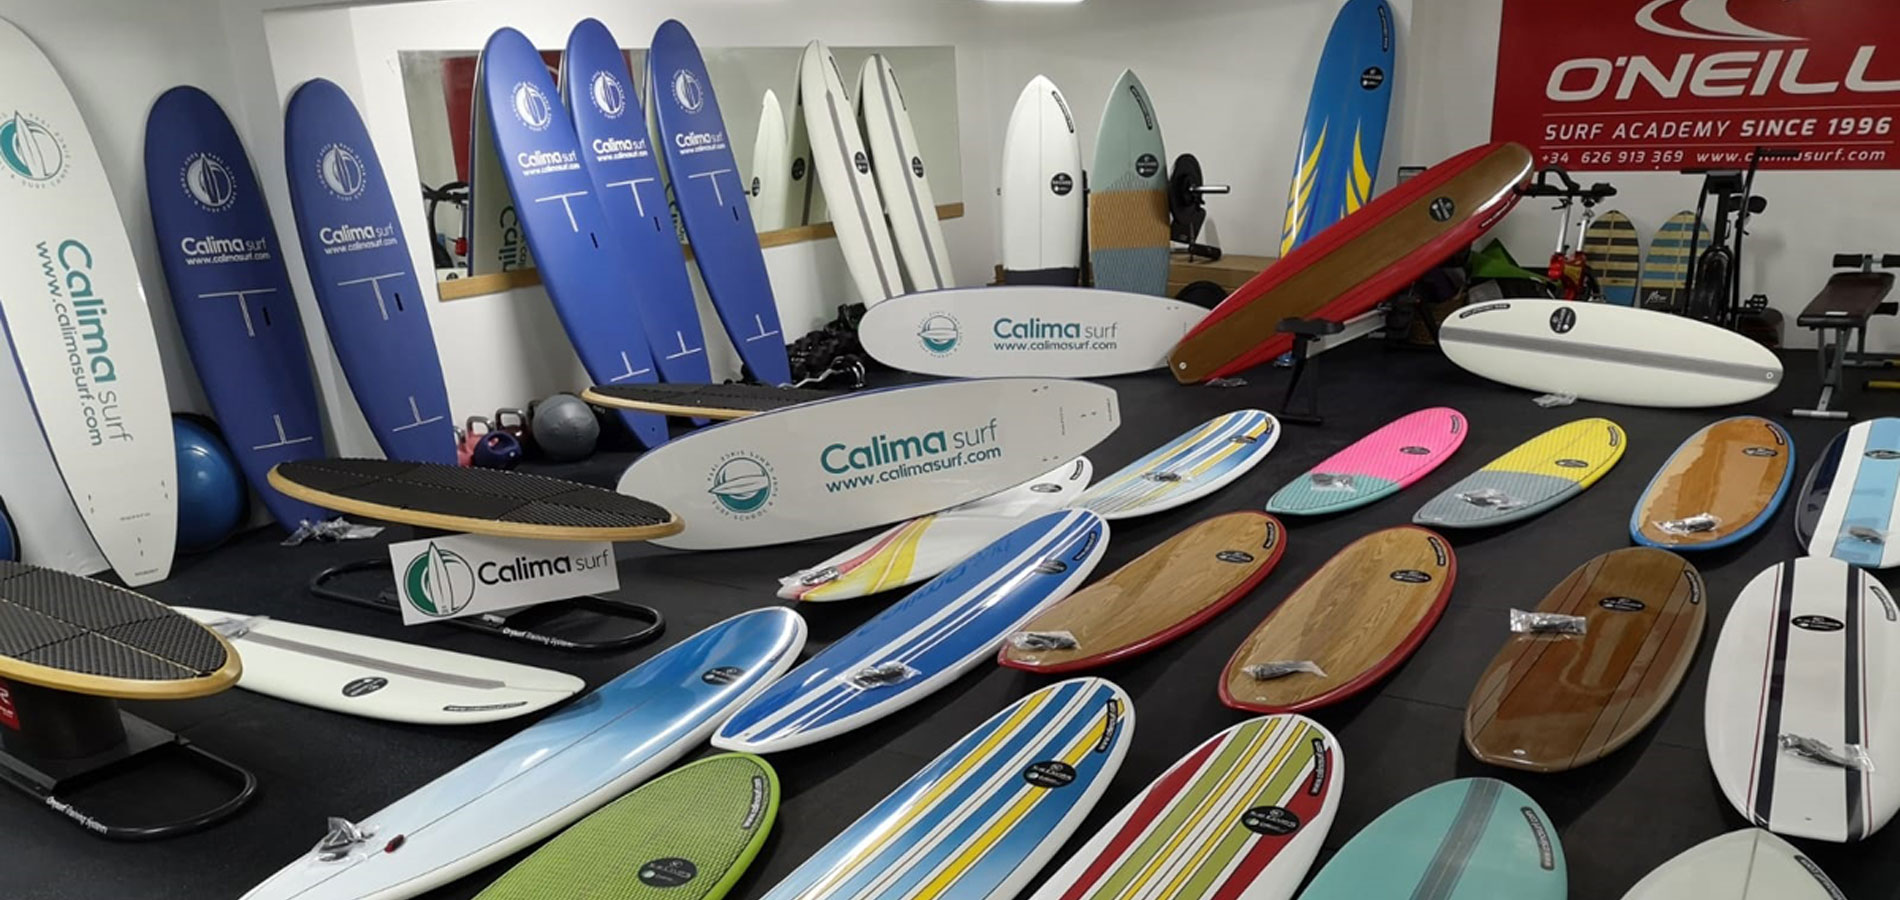 Campamento de surf para principiantes y avanzados en Famara. - Imagen galería